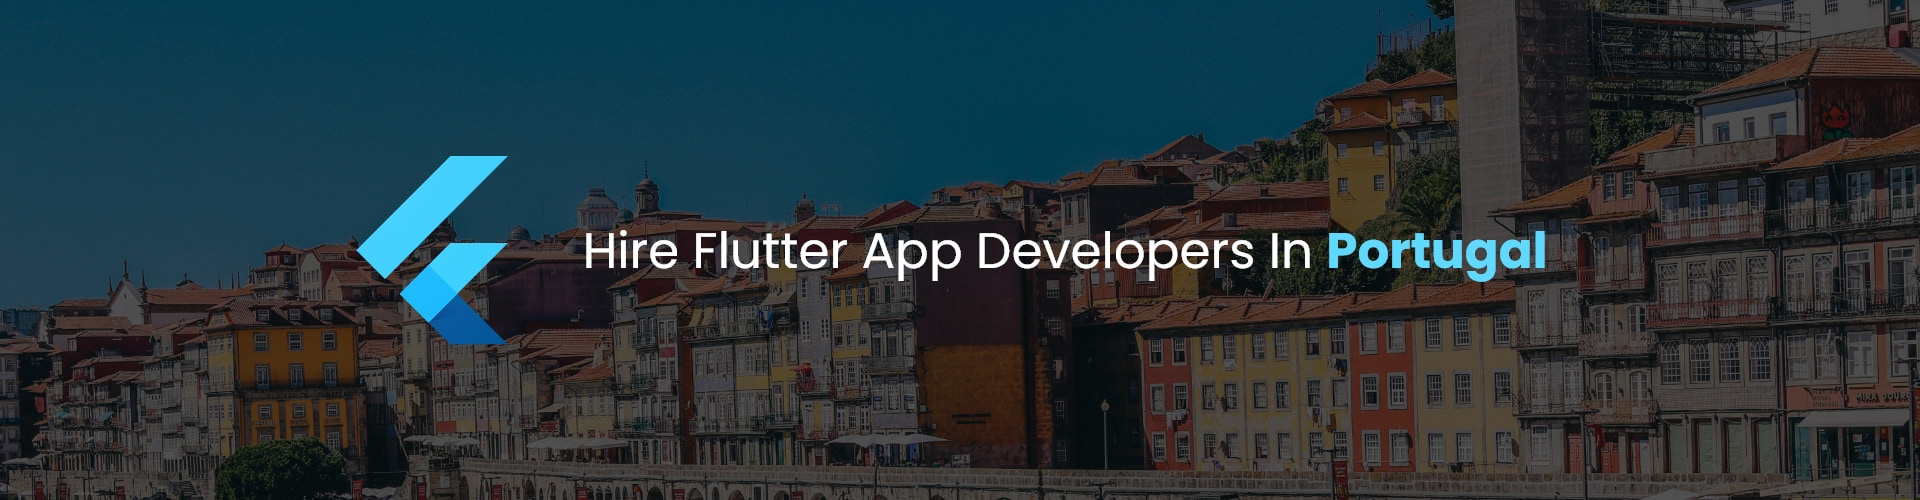 hire flutter app developers in portugal